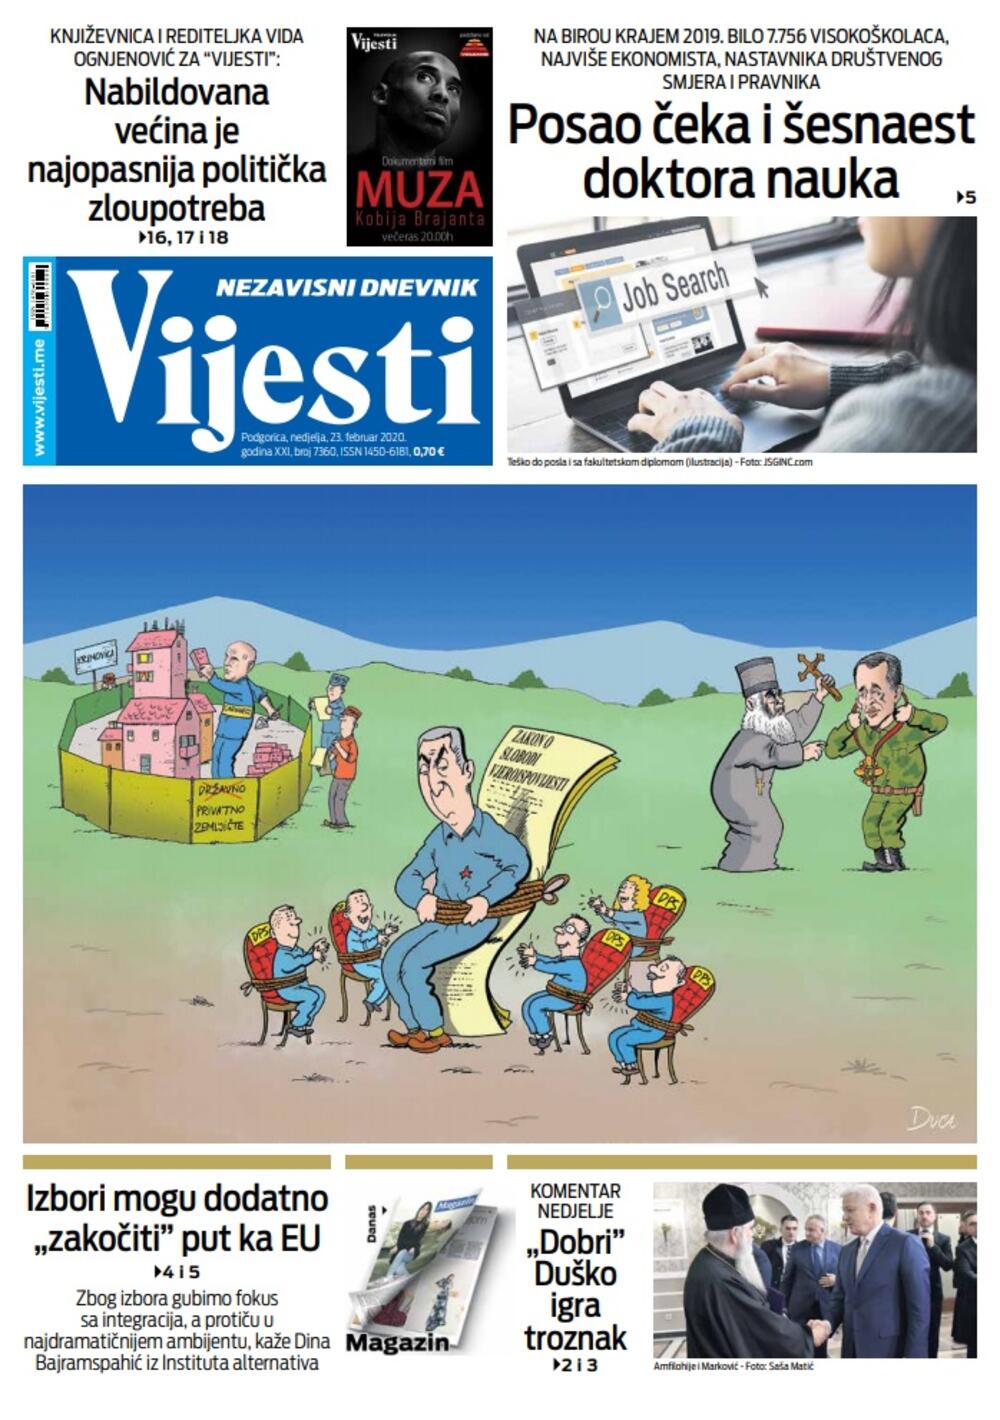 Naslovna strana "Vijesti" za 23. februar 2020. godine, Foto: "Vijesti"